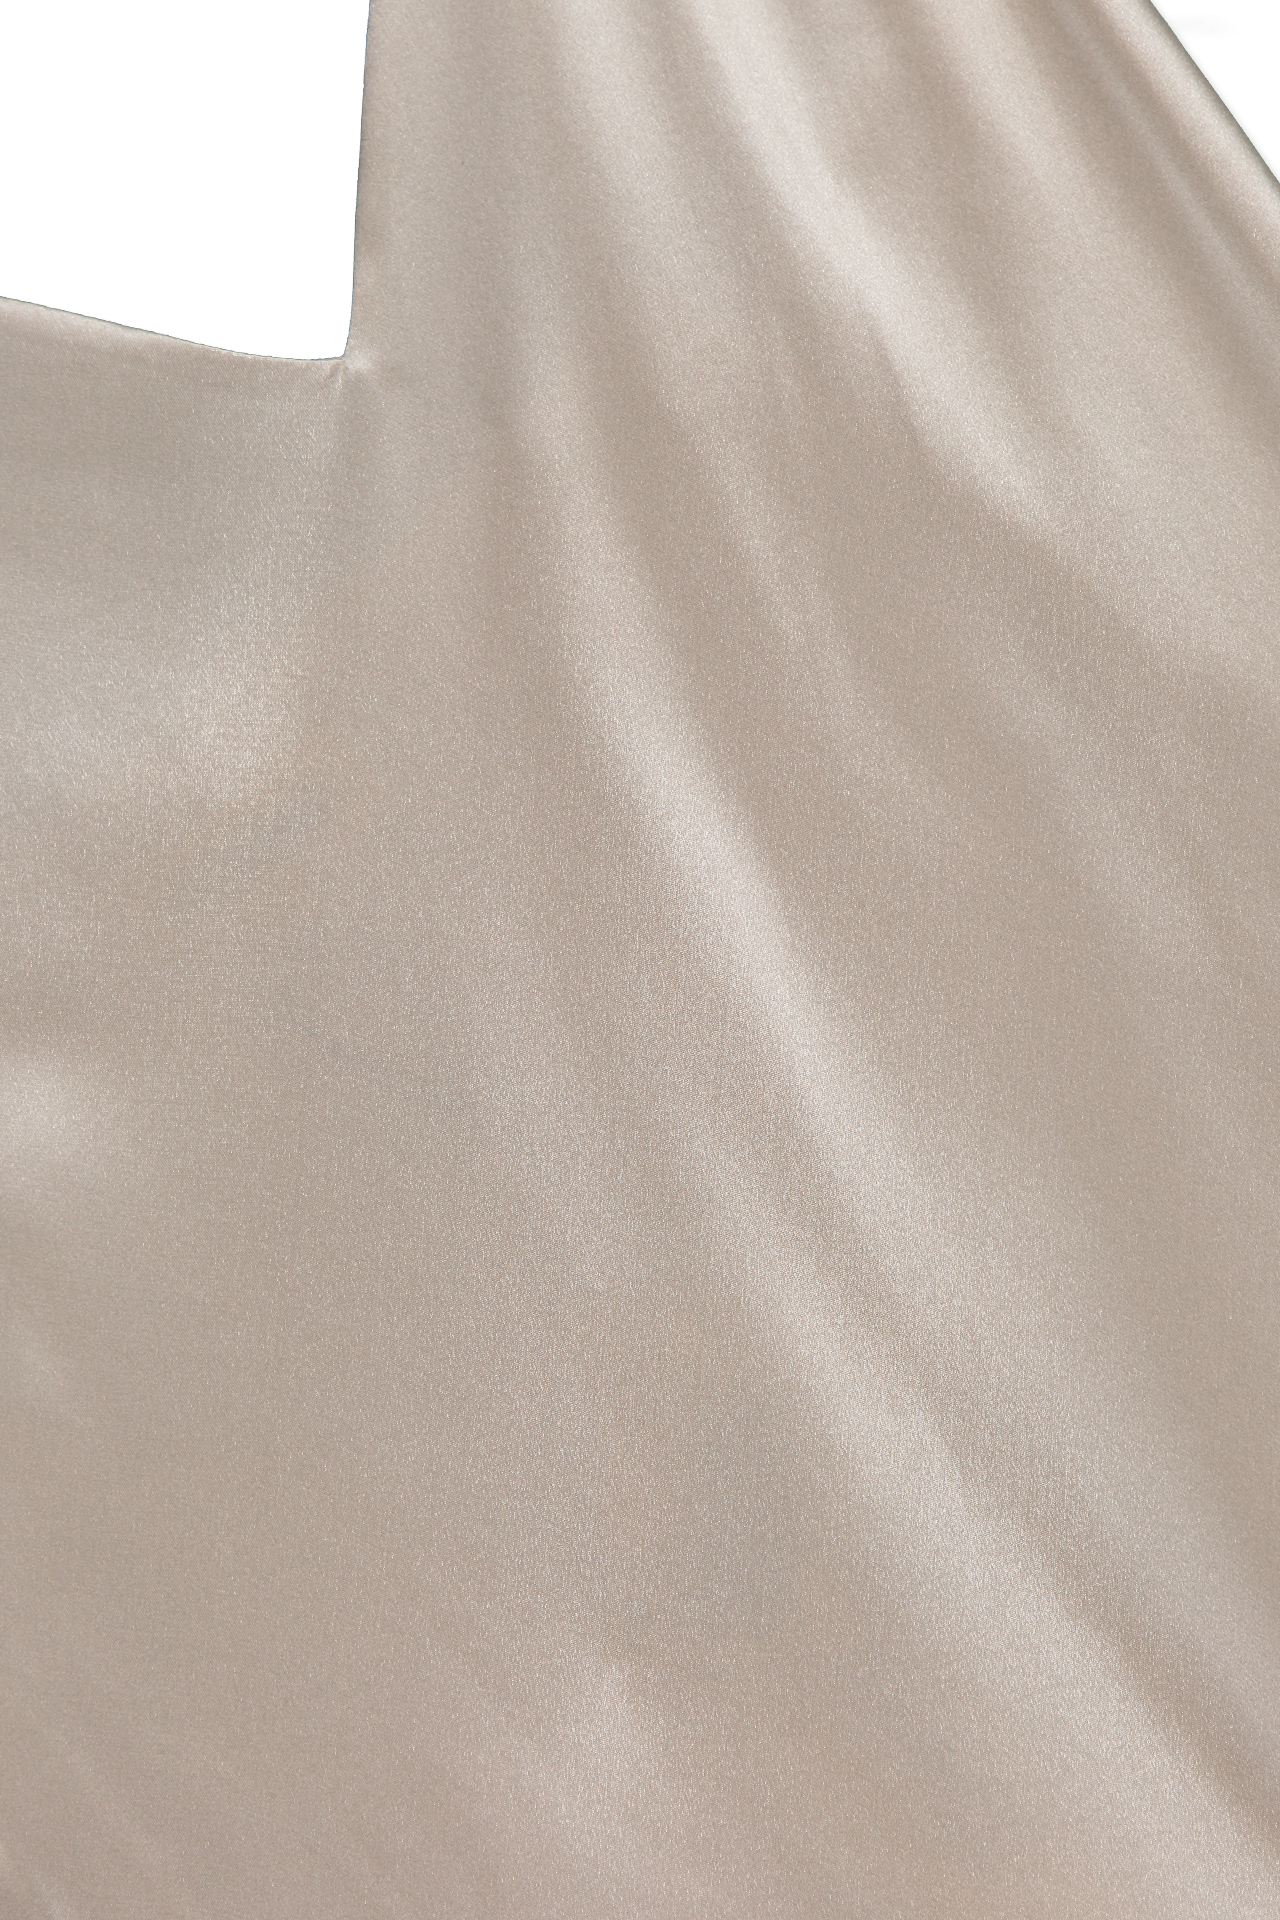 Lagence Jodie V-Neck Slip Dress Neutral Collar Detail Image (6620465856627)